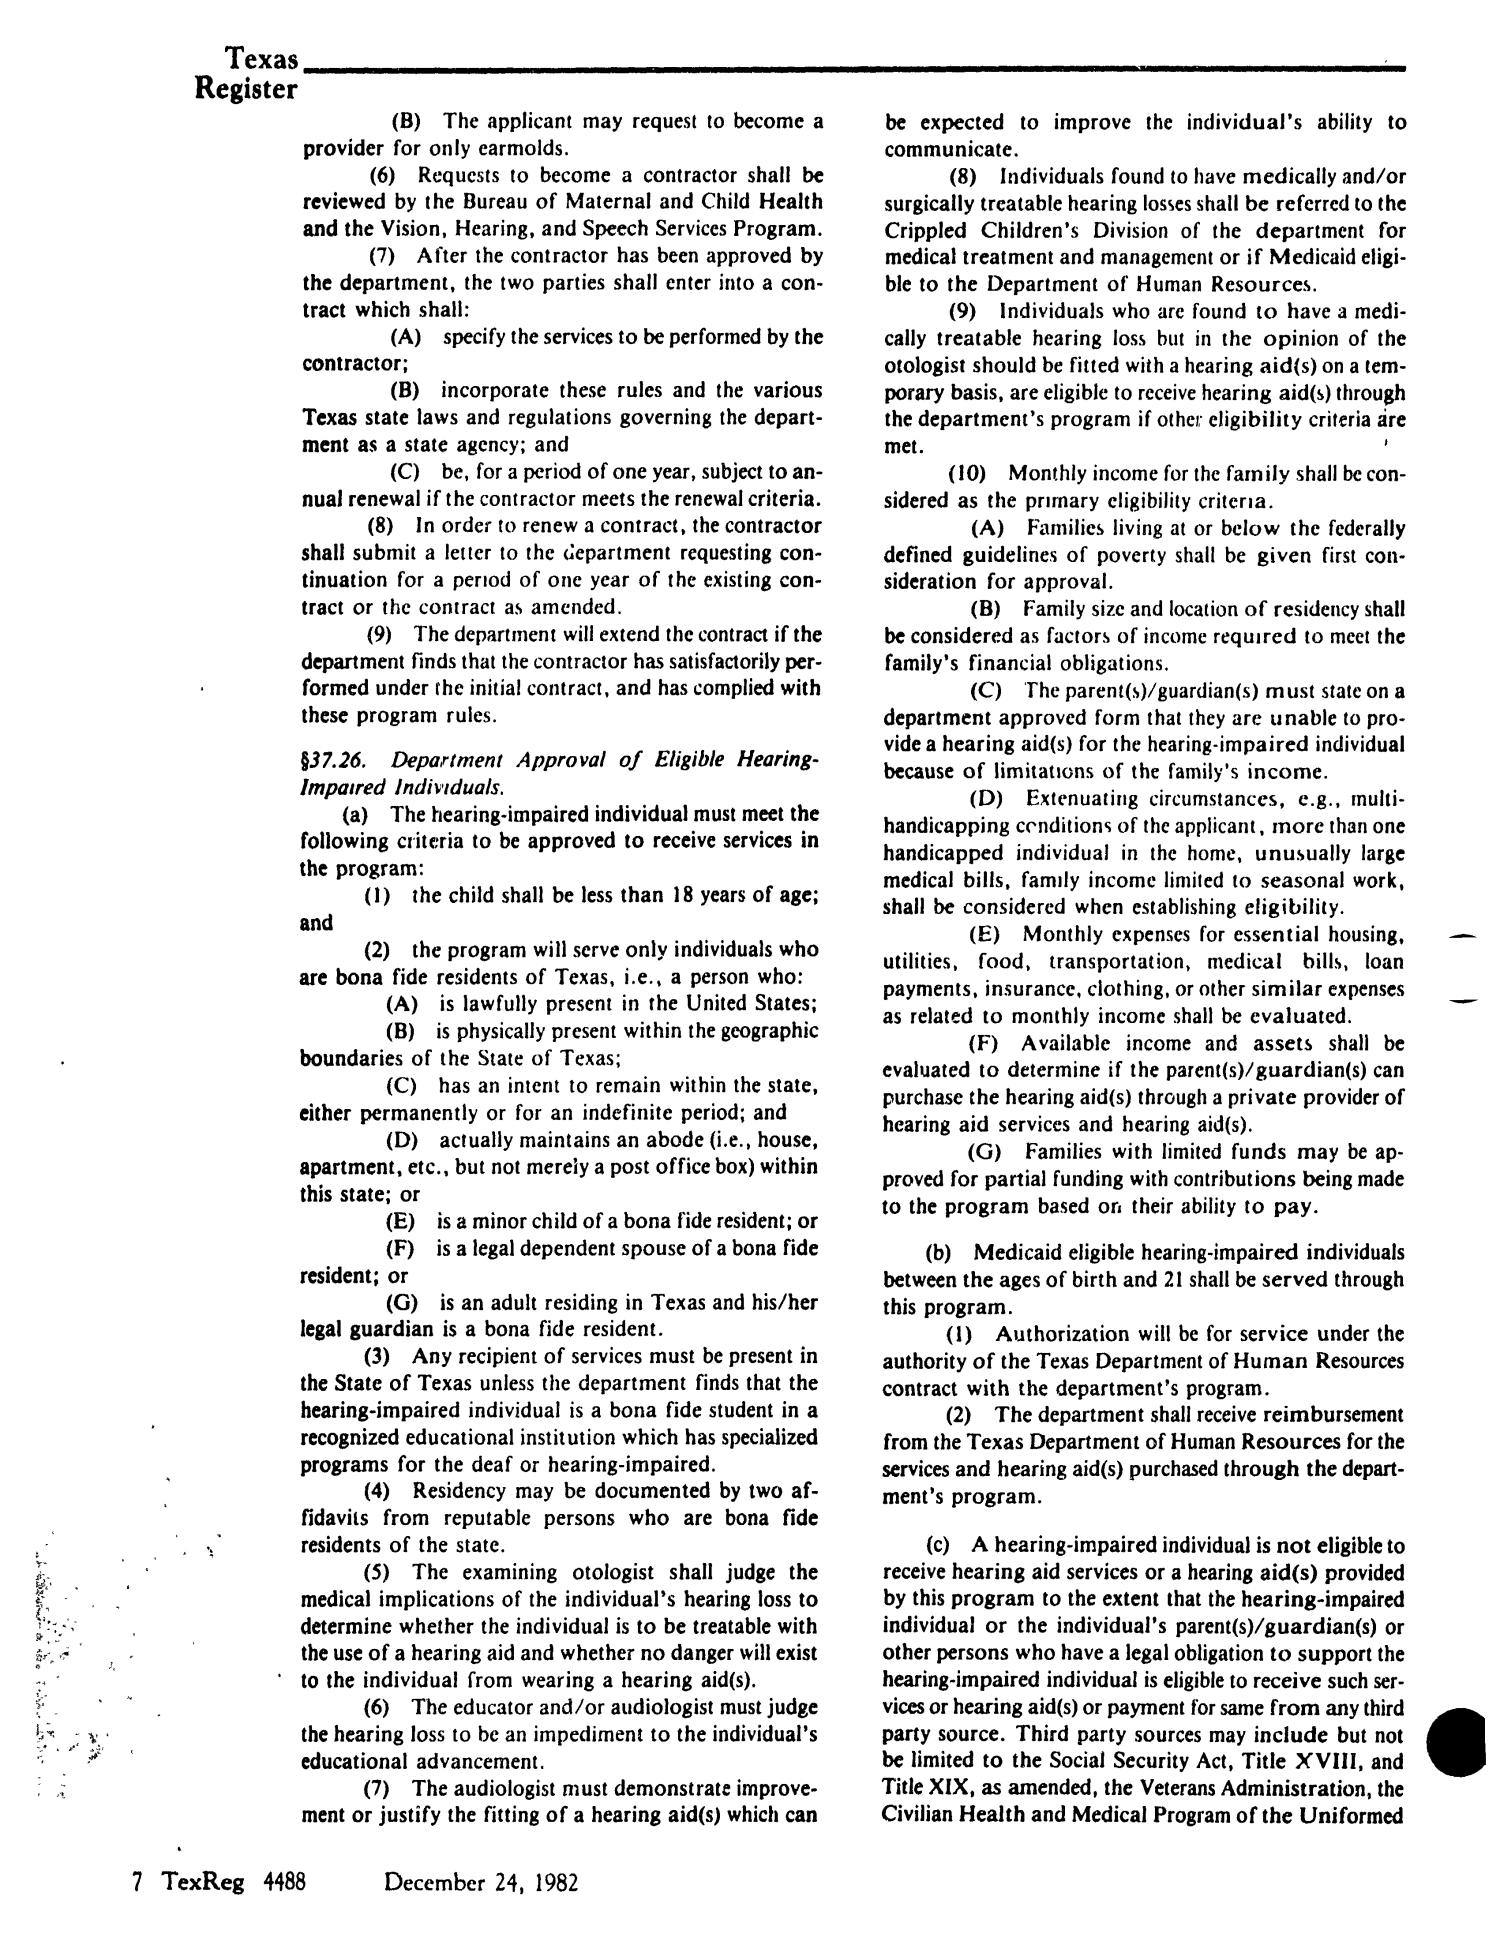 Texas Register, Volume 7, Number 95, Pages 4473-4508, December 24, 1982
                                                
                                                    4488
                                                